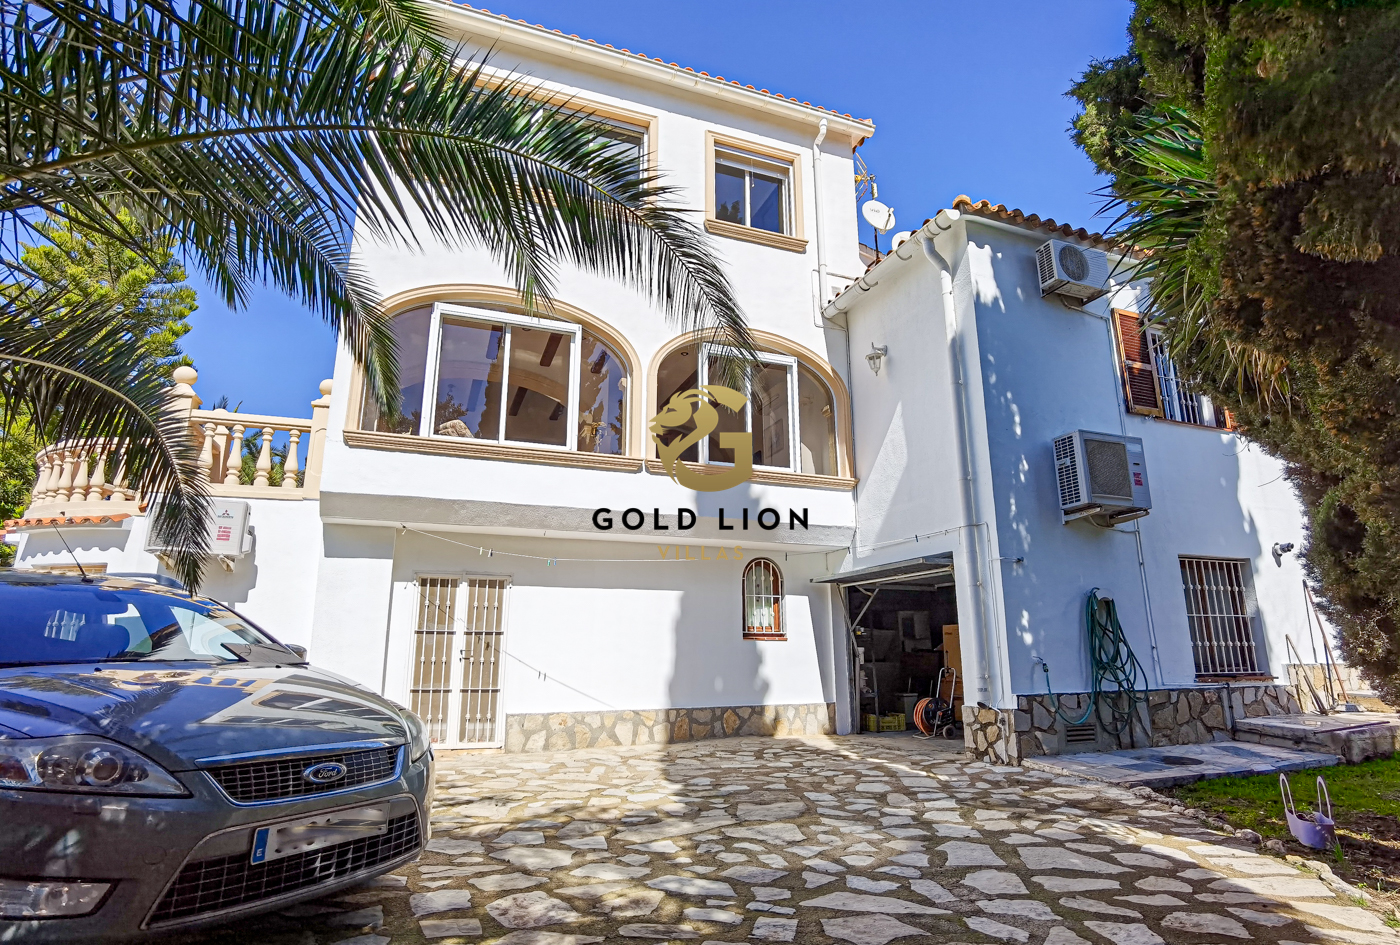 Villa a la venta en San Nicolás con apartamento independiente